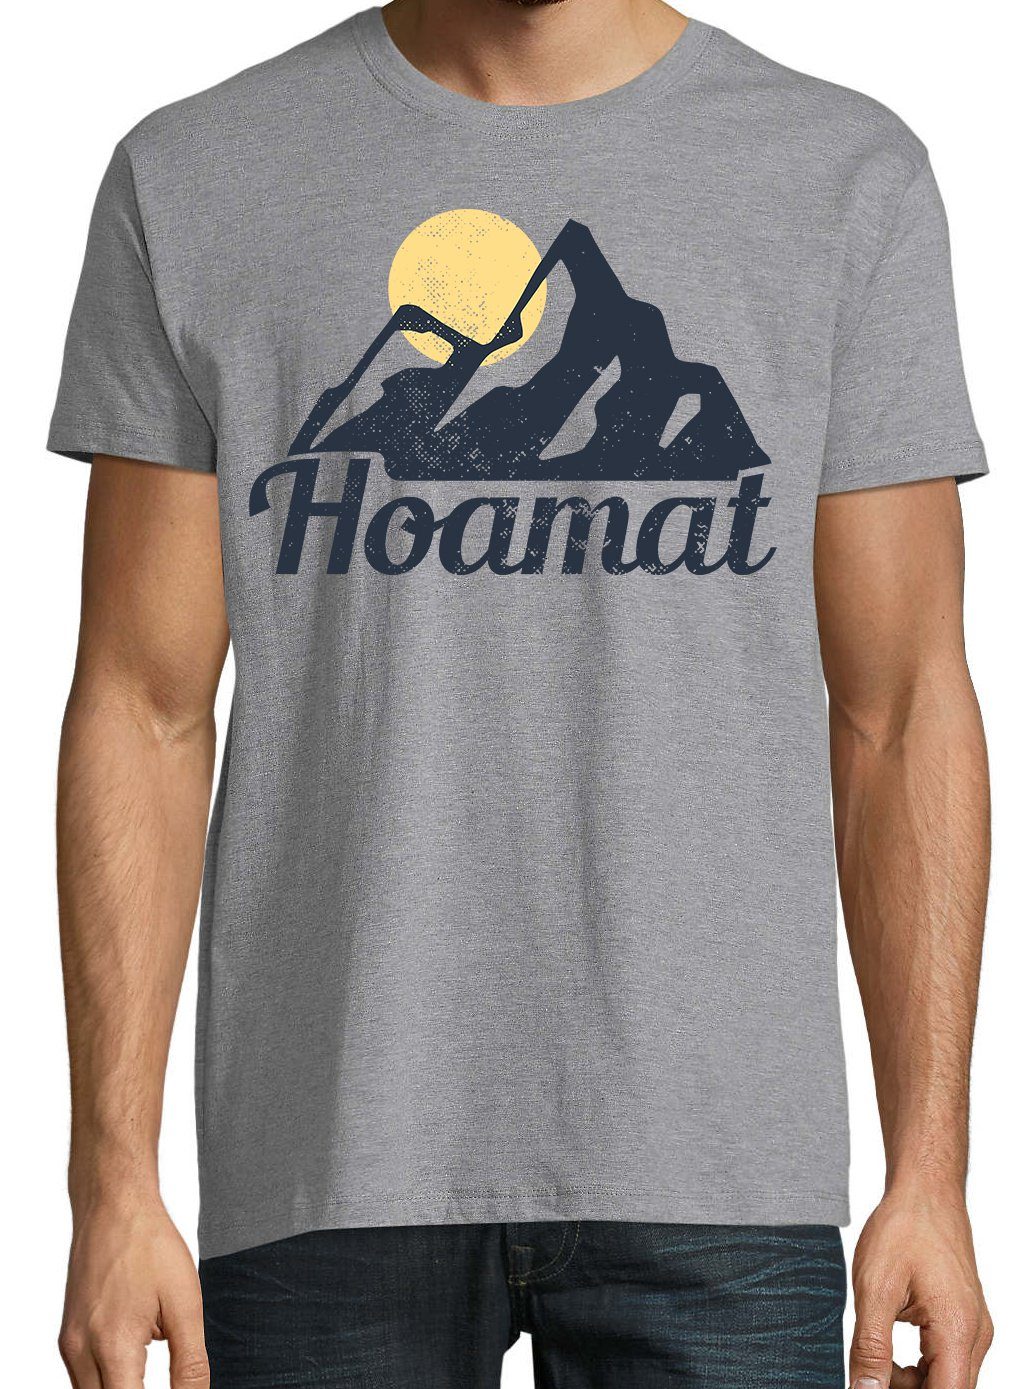 Youth Designz T-Shirt Hoamat Herren Grau Spruch T-Shirt lustigem mit